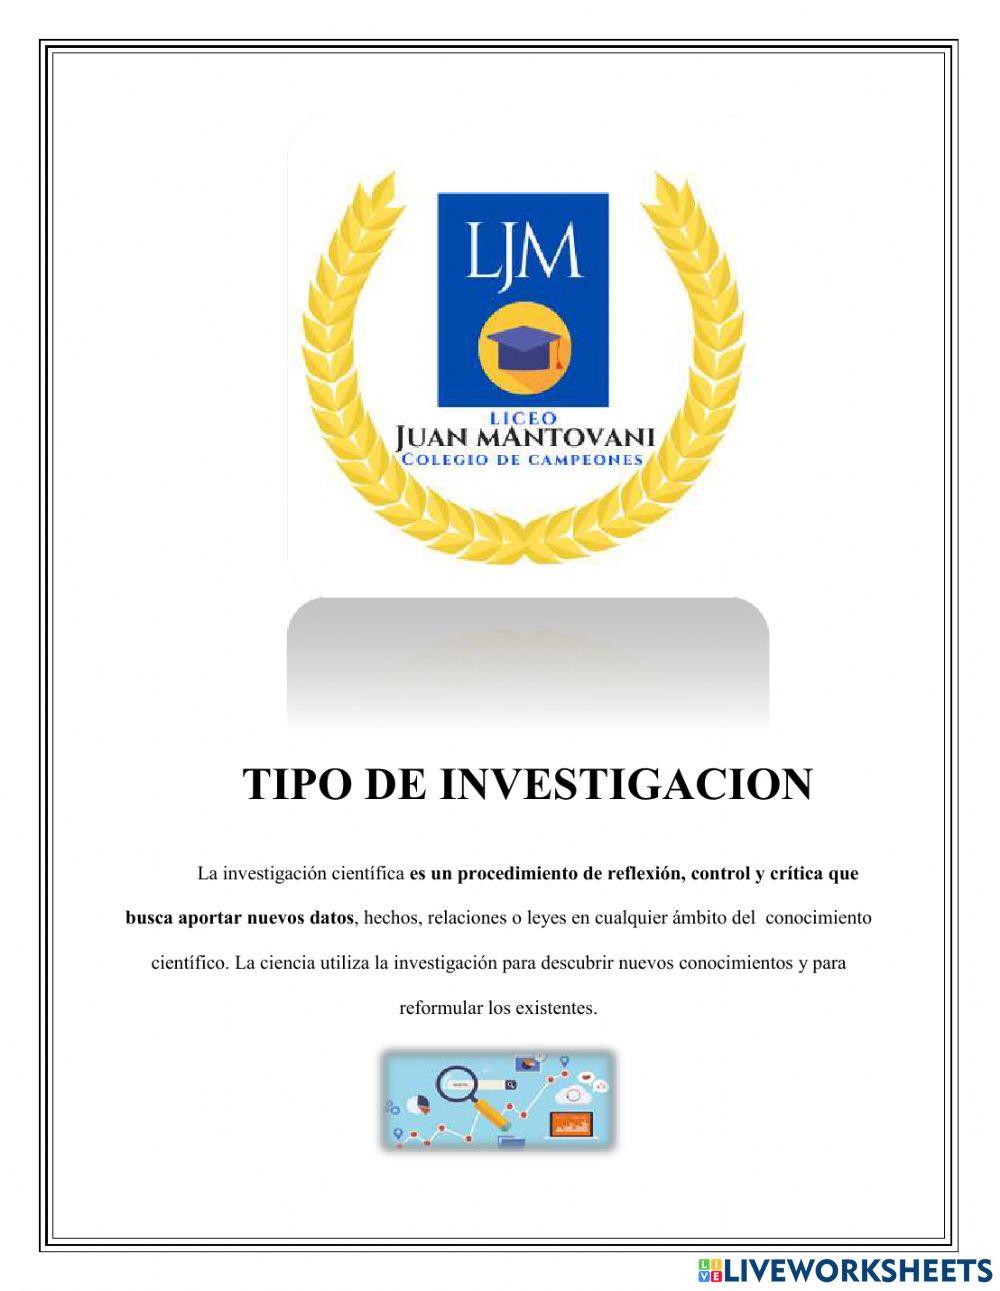 Evaluacion de TIPOS DE INVESTIGACION